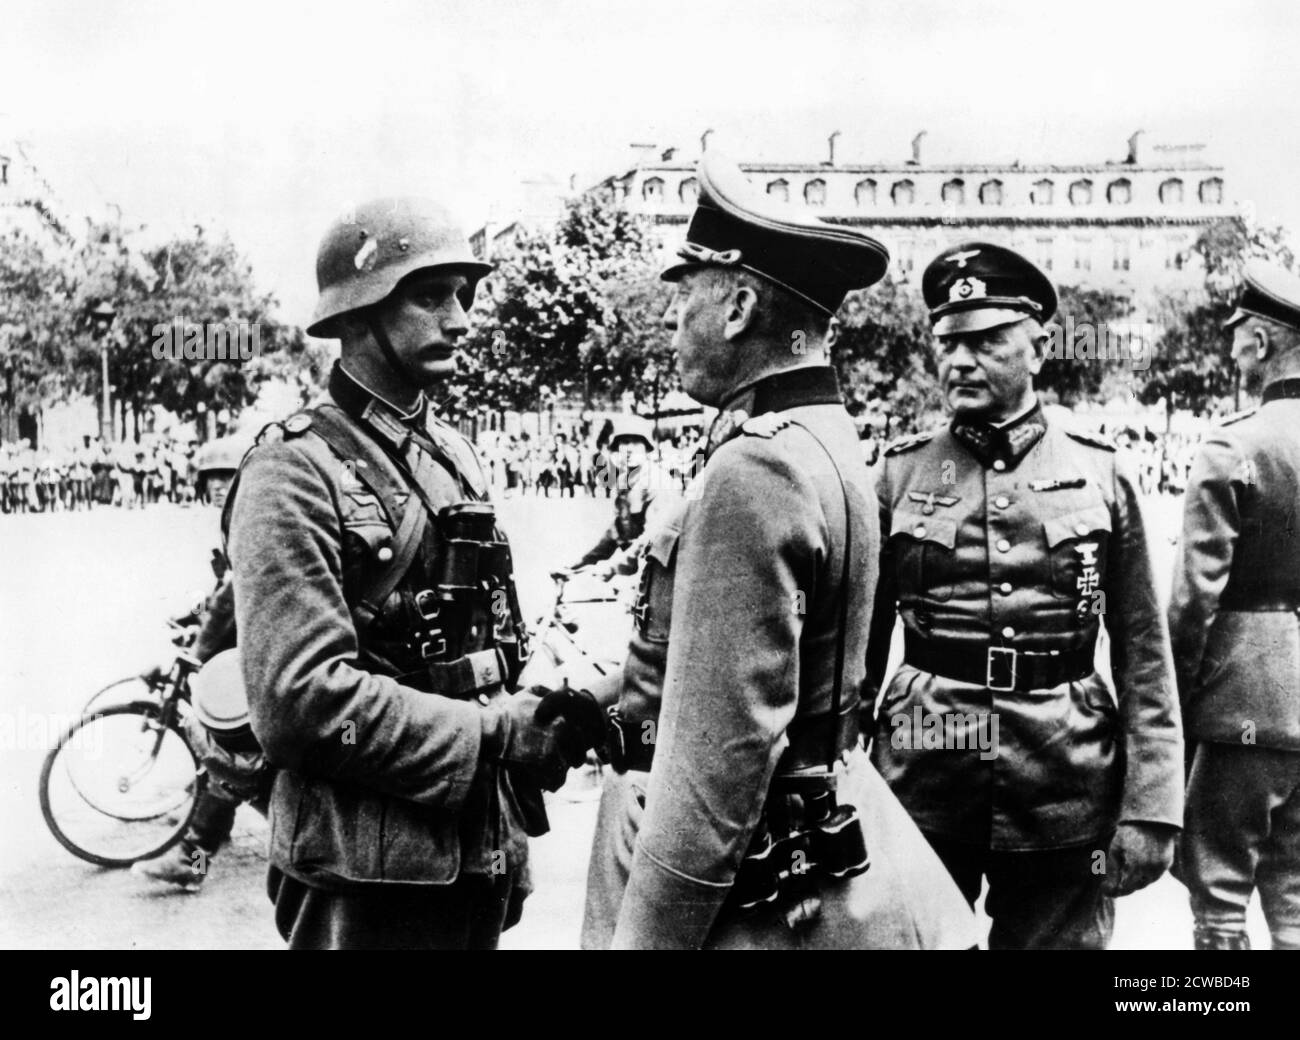 Deutsche Siegesparade nach der Eroberung von Paris, Juni 1940. General Georg von Kuechler, Kommandant der 18. Armee bei der Invasion der Niederen Länder und Frankreichs, schüttelte sich bei der Parade am Triumphbogen mit einem Soldaten die Hände. Der Fotograf ist unbekannt. Stockfoto